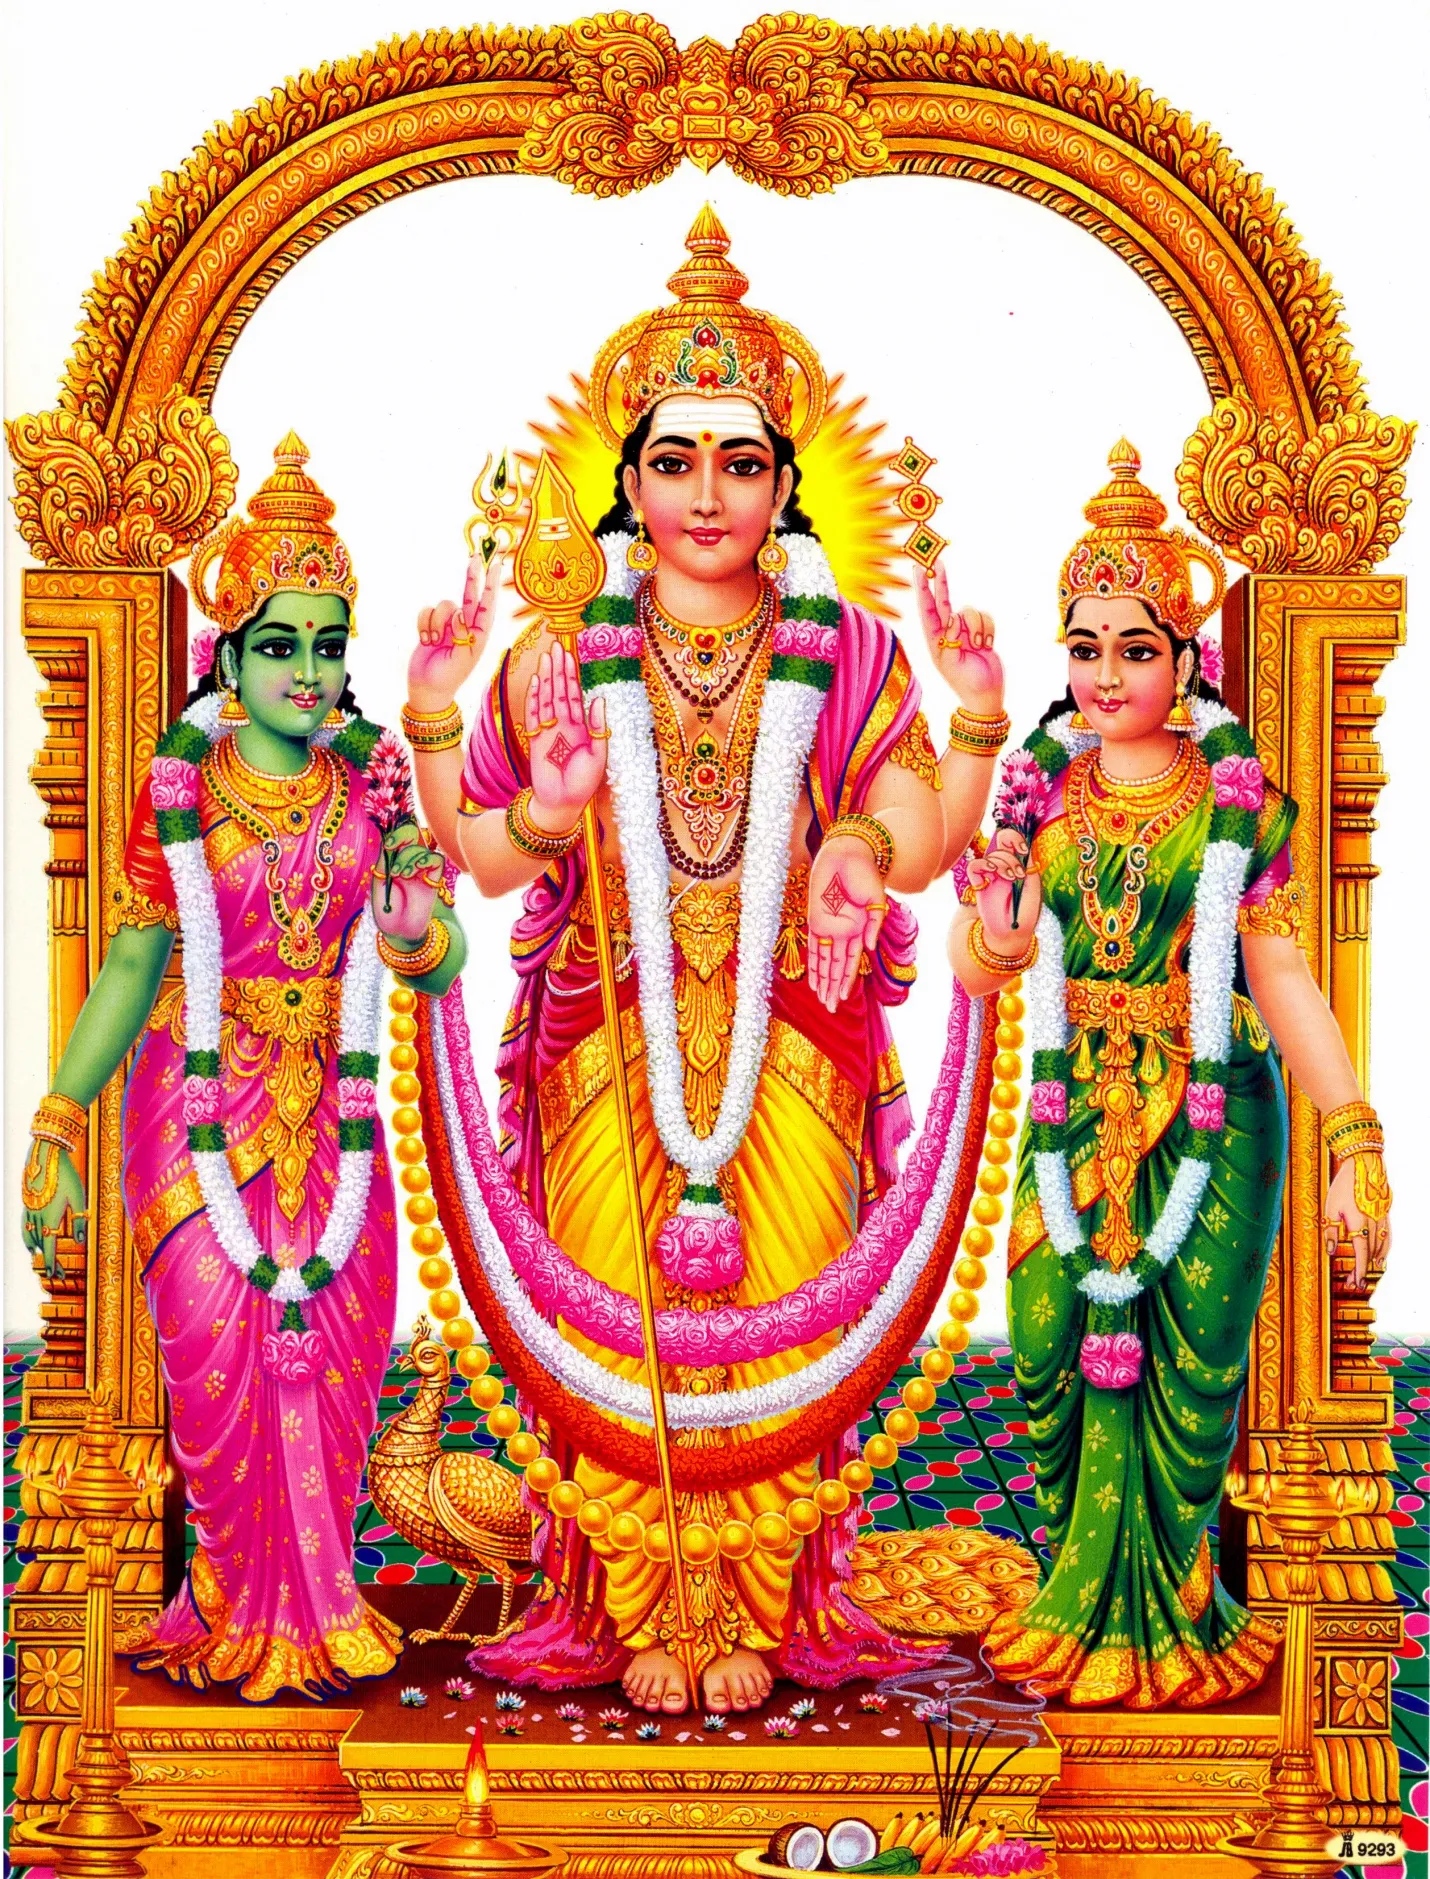 Thiruchendur Murugan - Lord Murugan